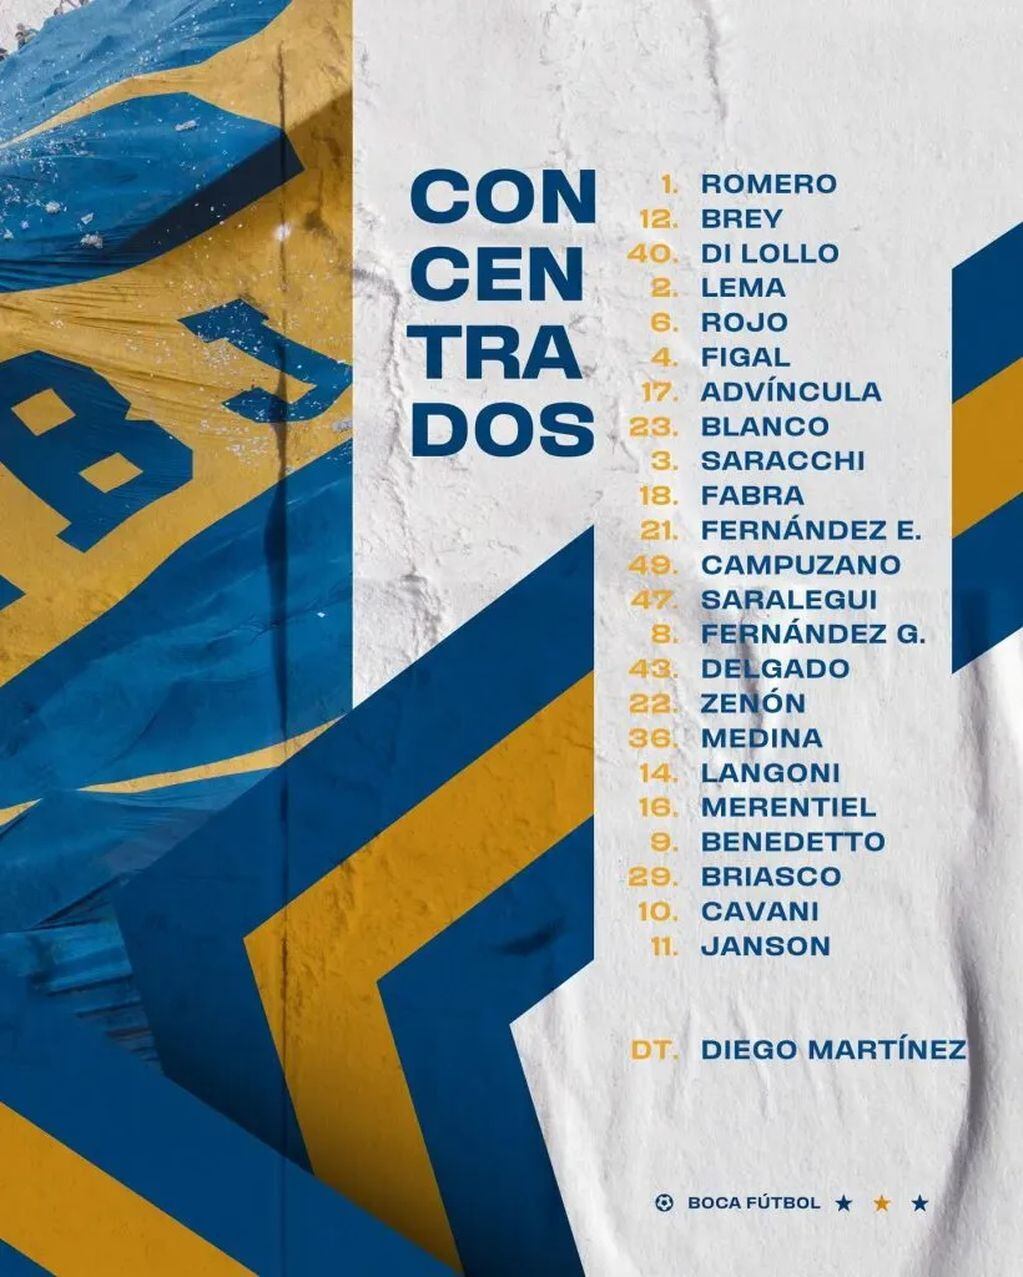 La lista de convocados de Boca para enfrentar a Estudiantes, en semifinal de la Copa de la Liga.